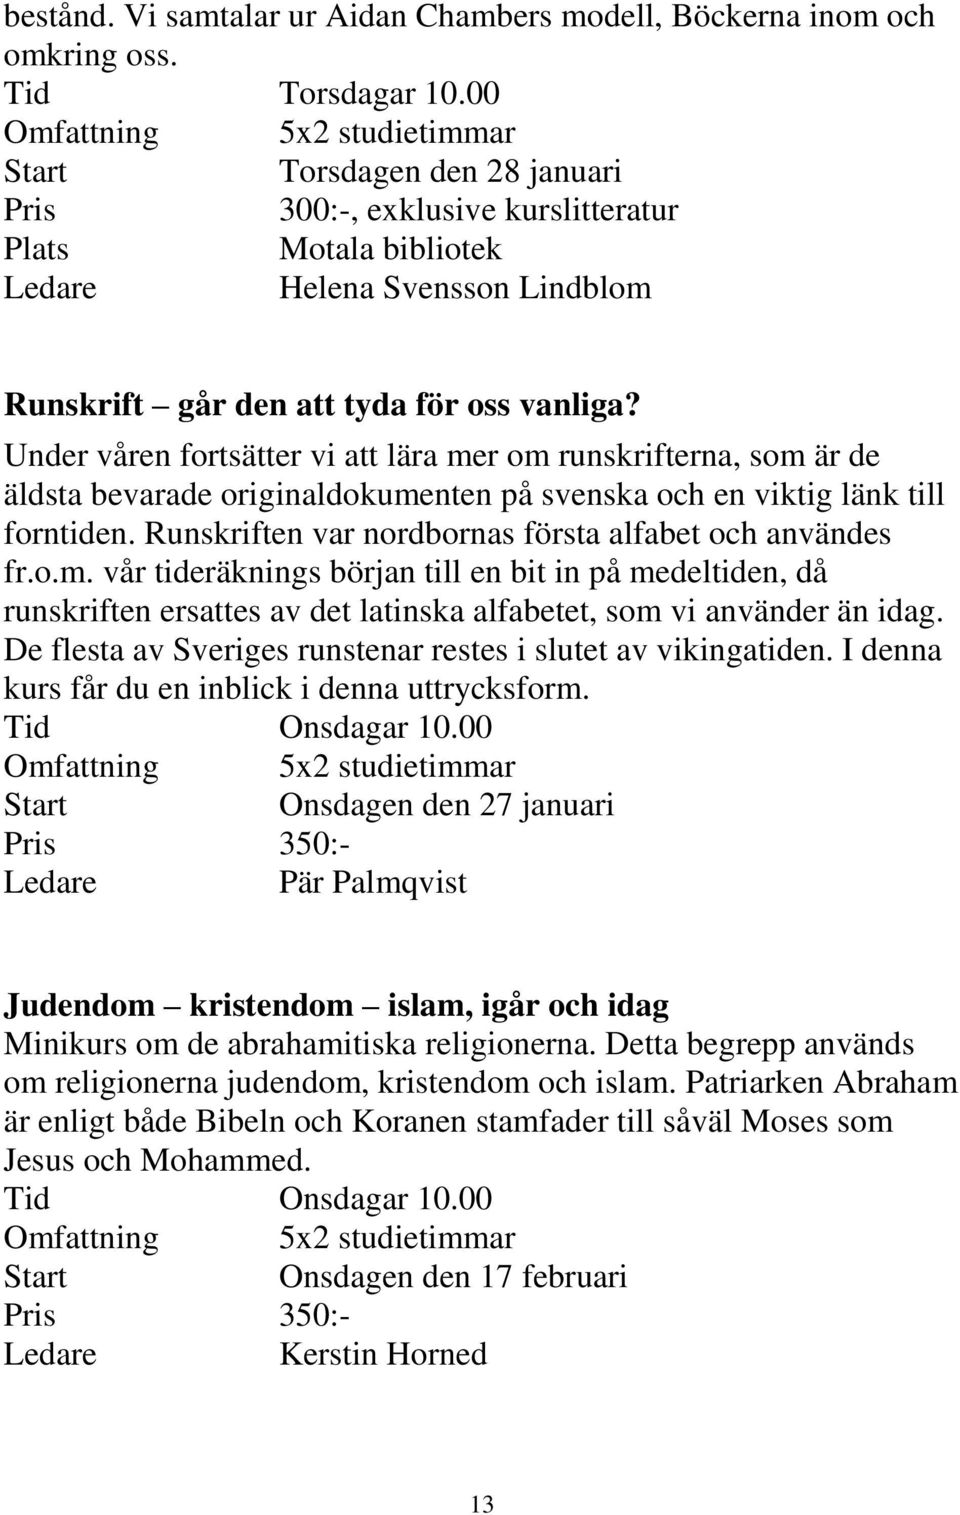 Under våren fortsätter vi att lära mer om runskrifterna, som är de äldsta bevarade originaldokumenten på svenska och en viktig länk till forntiden.